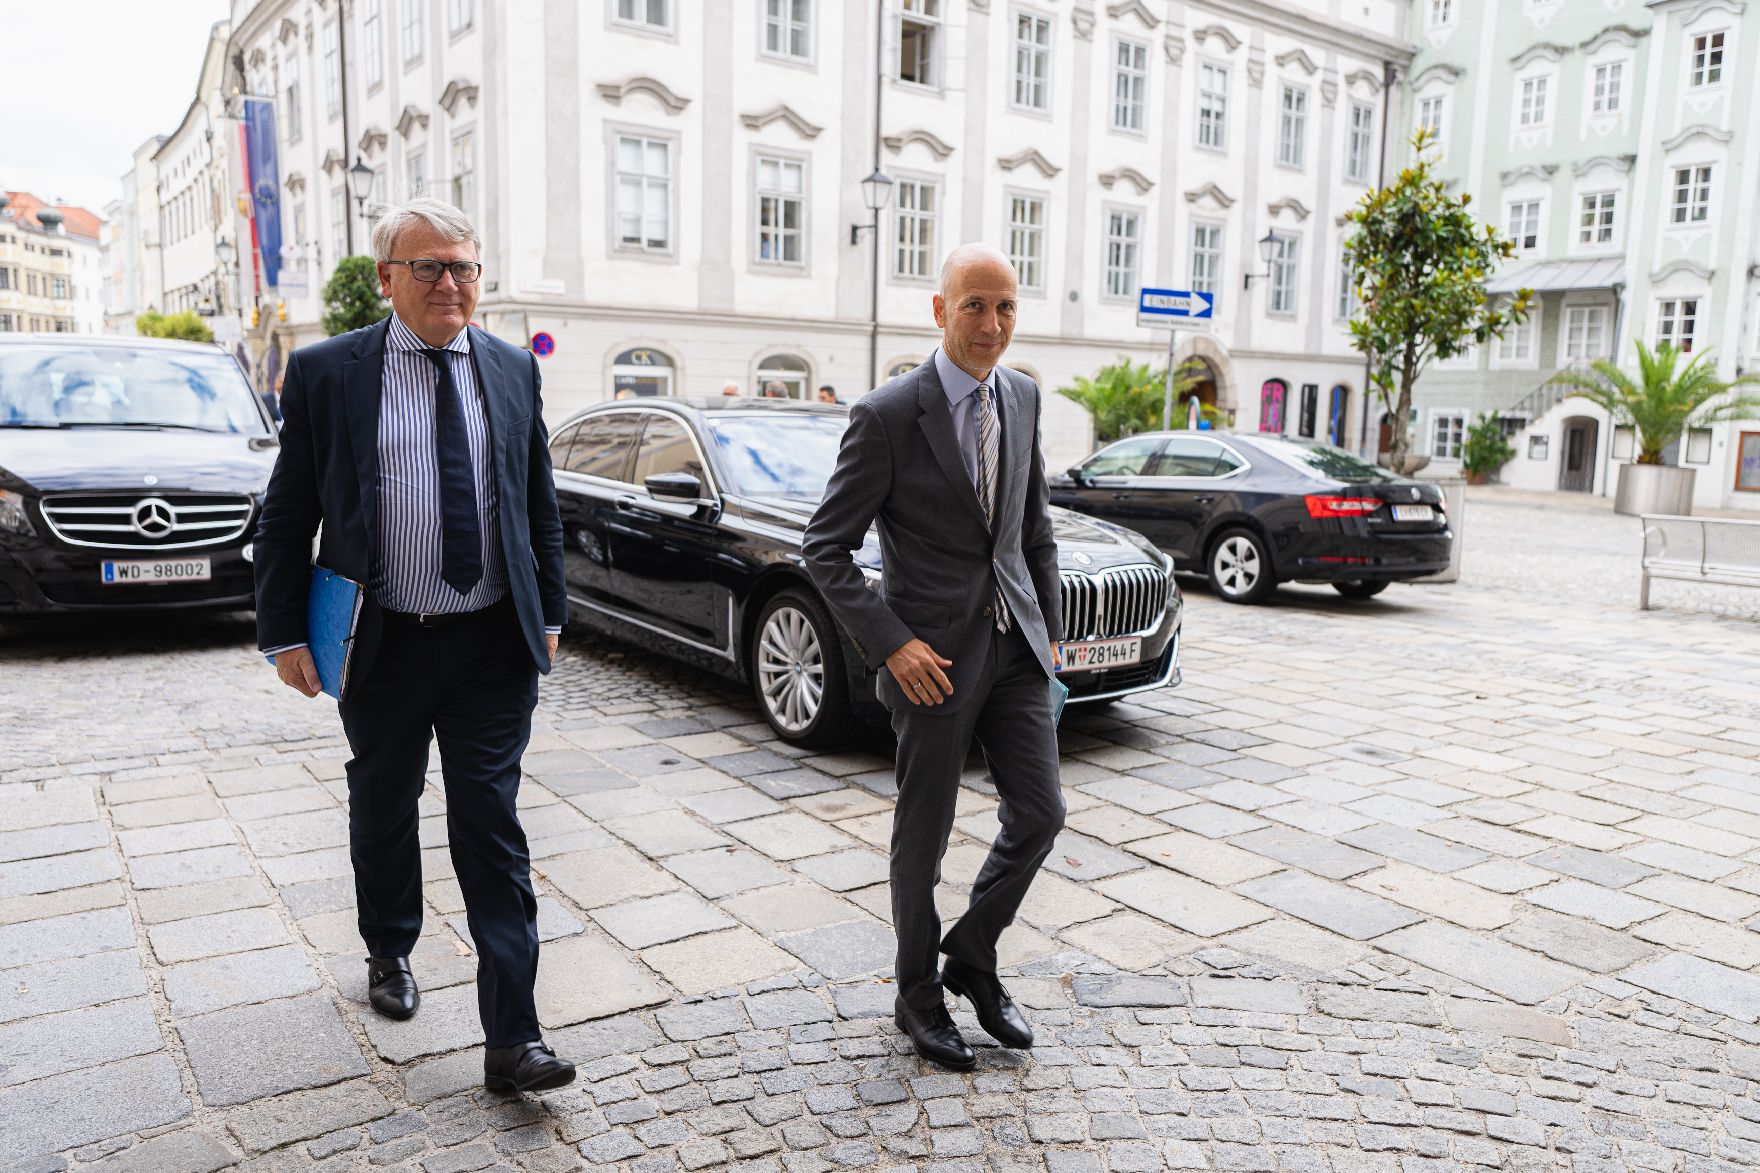 Am 16. Juli 2021 traf Bundesminister Martin Kocher (r.) im Rahmen seines Bundesländertags in Oberösterreich den Landeshauptmann von Oberösterreich Thomas Stelzer zu einem Arbeitsgespräch. Im Bild mit EU-Kommissar Nicolas Schmit (l.) am wen zum Gespräch,